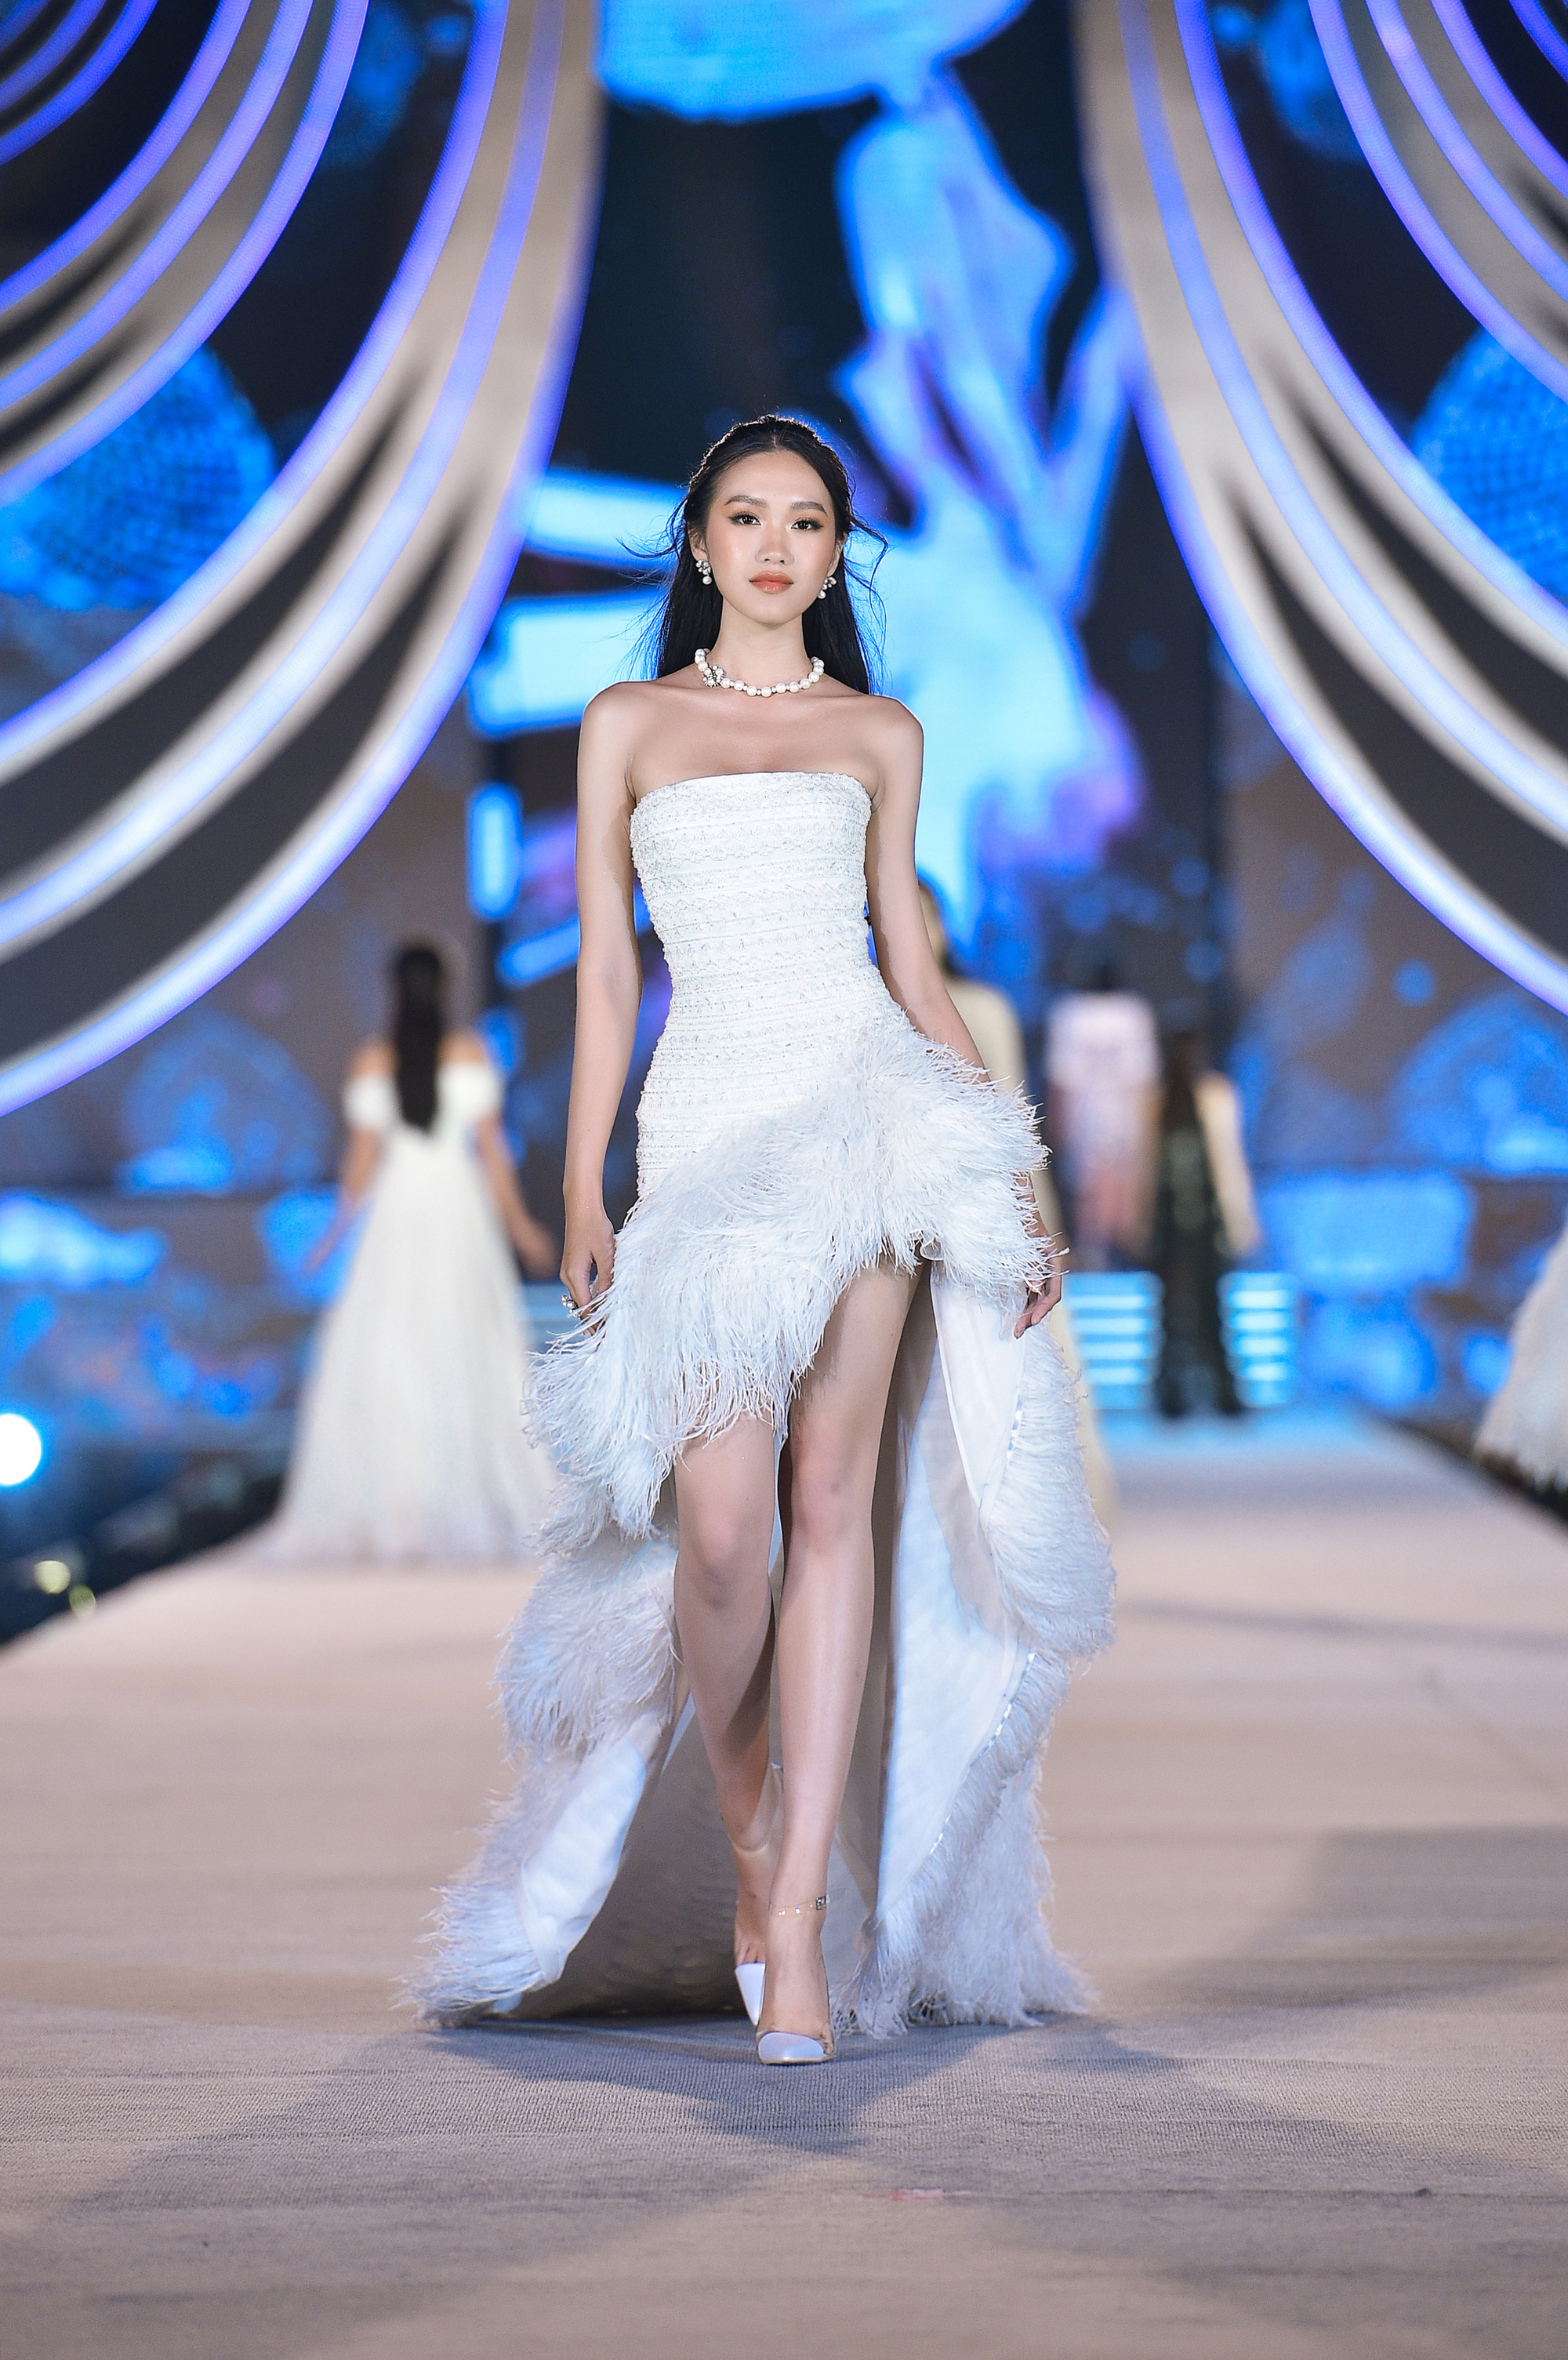 Hoa hậu Việt Nam tỏa sáng trong đêm thi Người đẹp Thời trang - Ảnh 1.